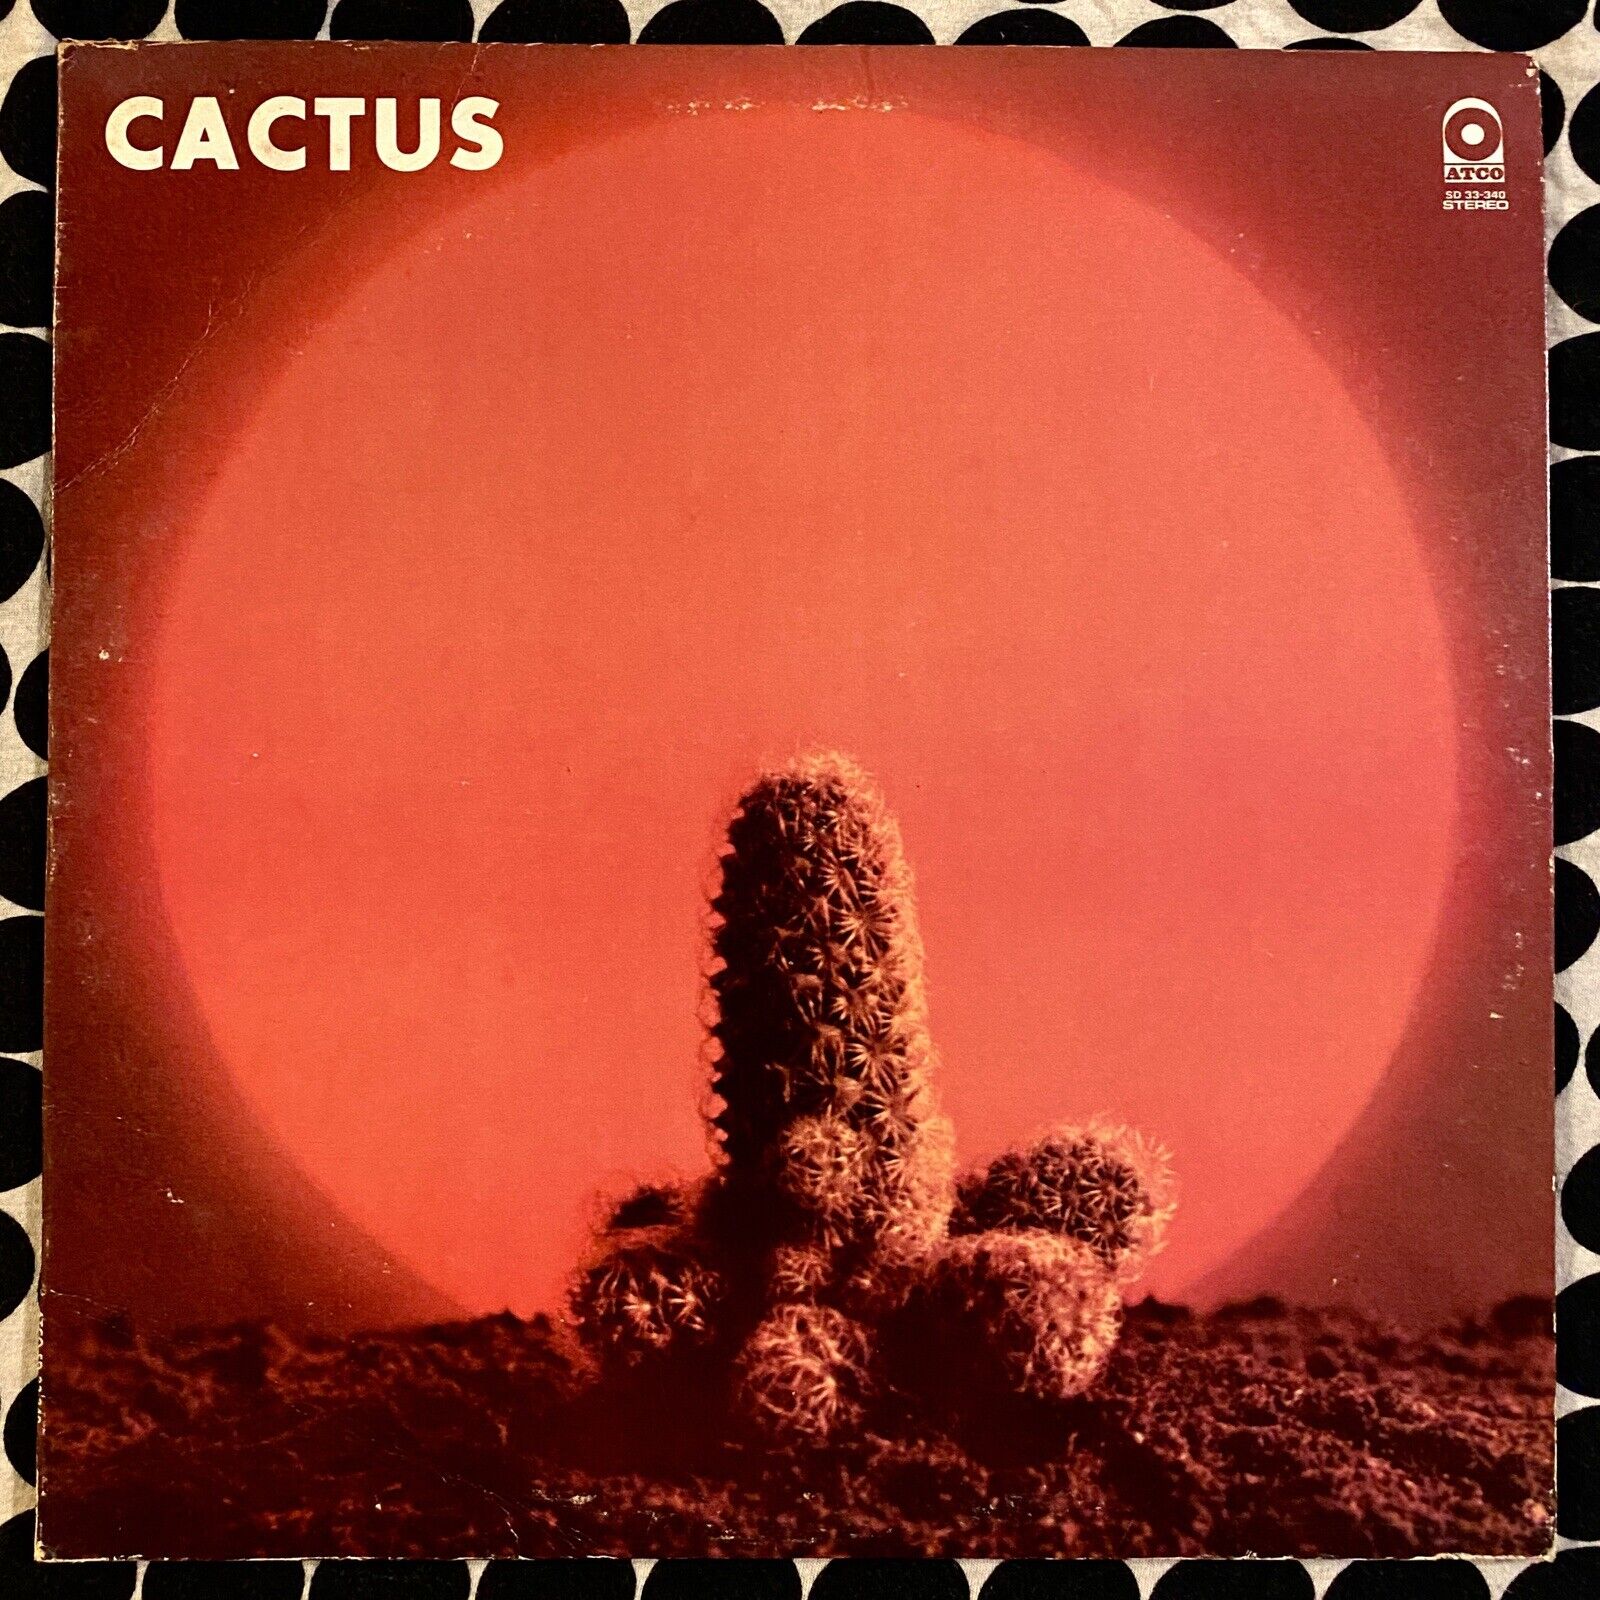 CACTUS - ATCO RECORDS SD 33-340 - ORIGINAL - 1970